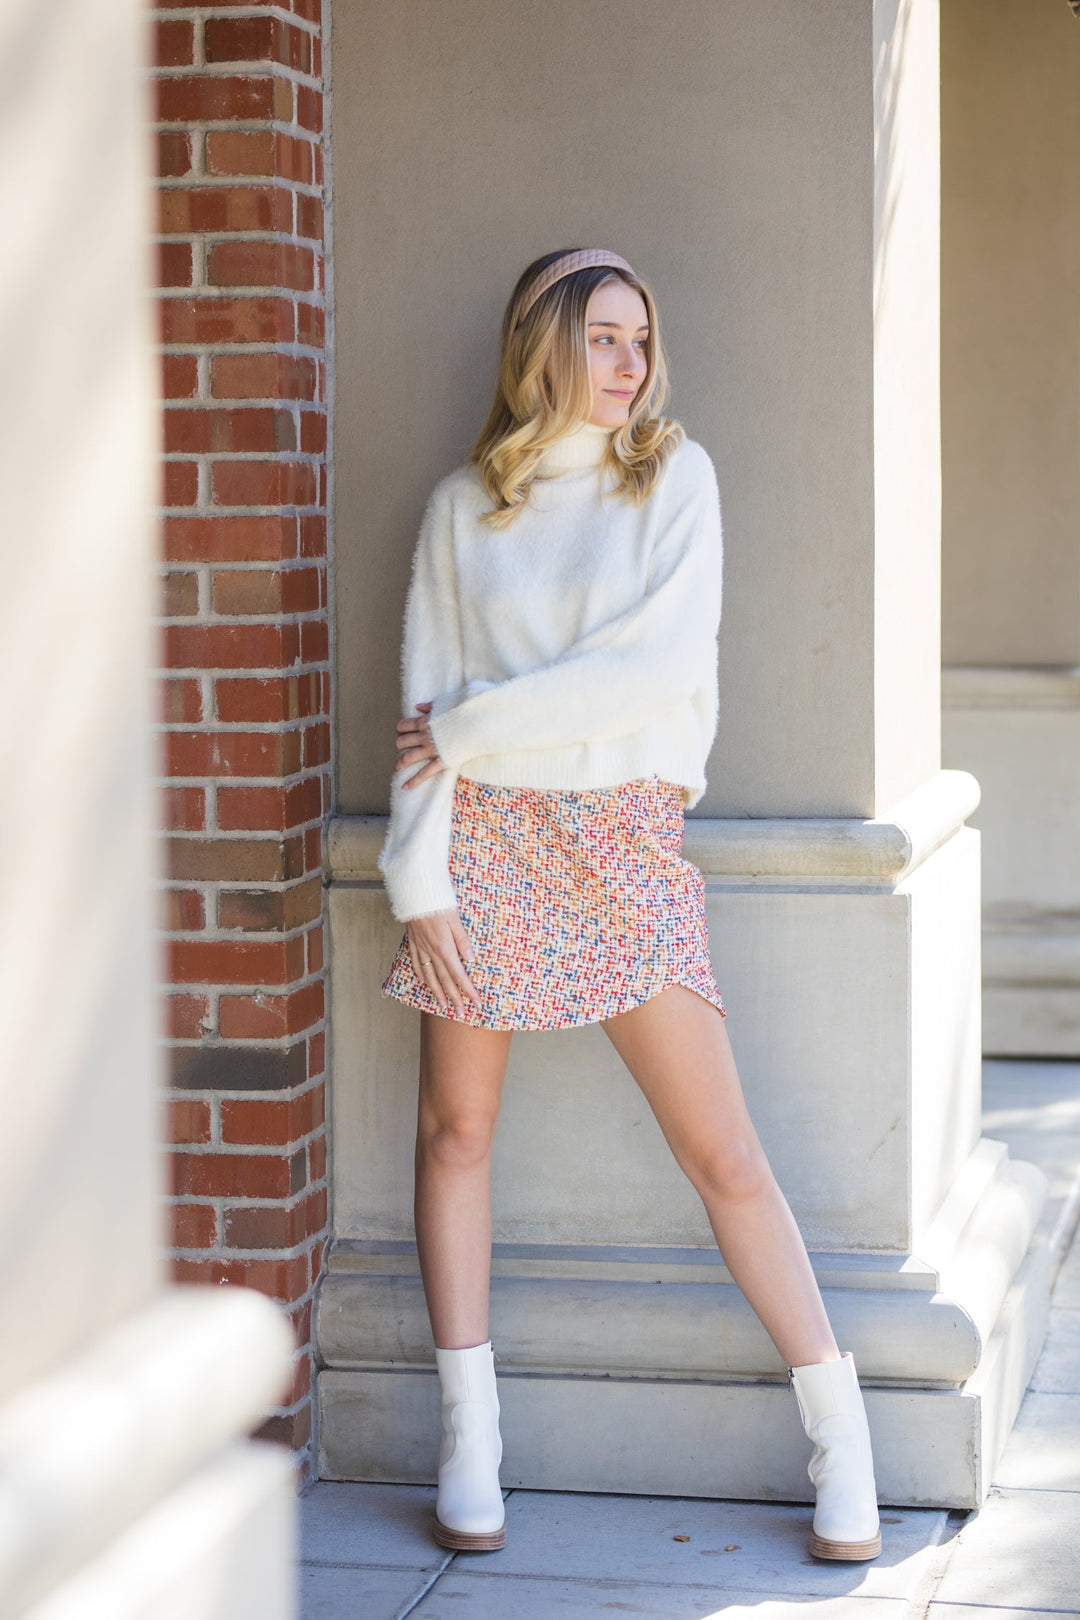 The Elle Woods Multi Color Tweed Mini Skirt